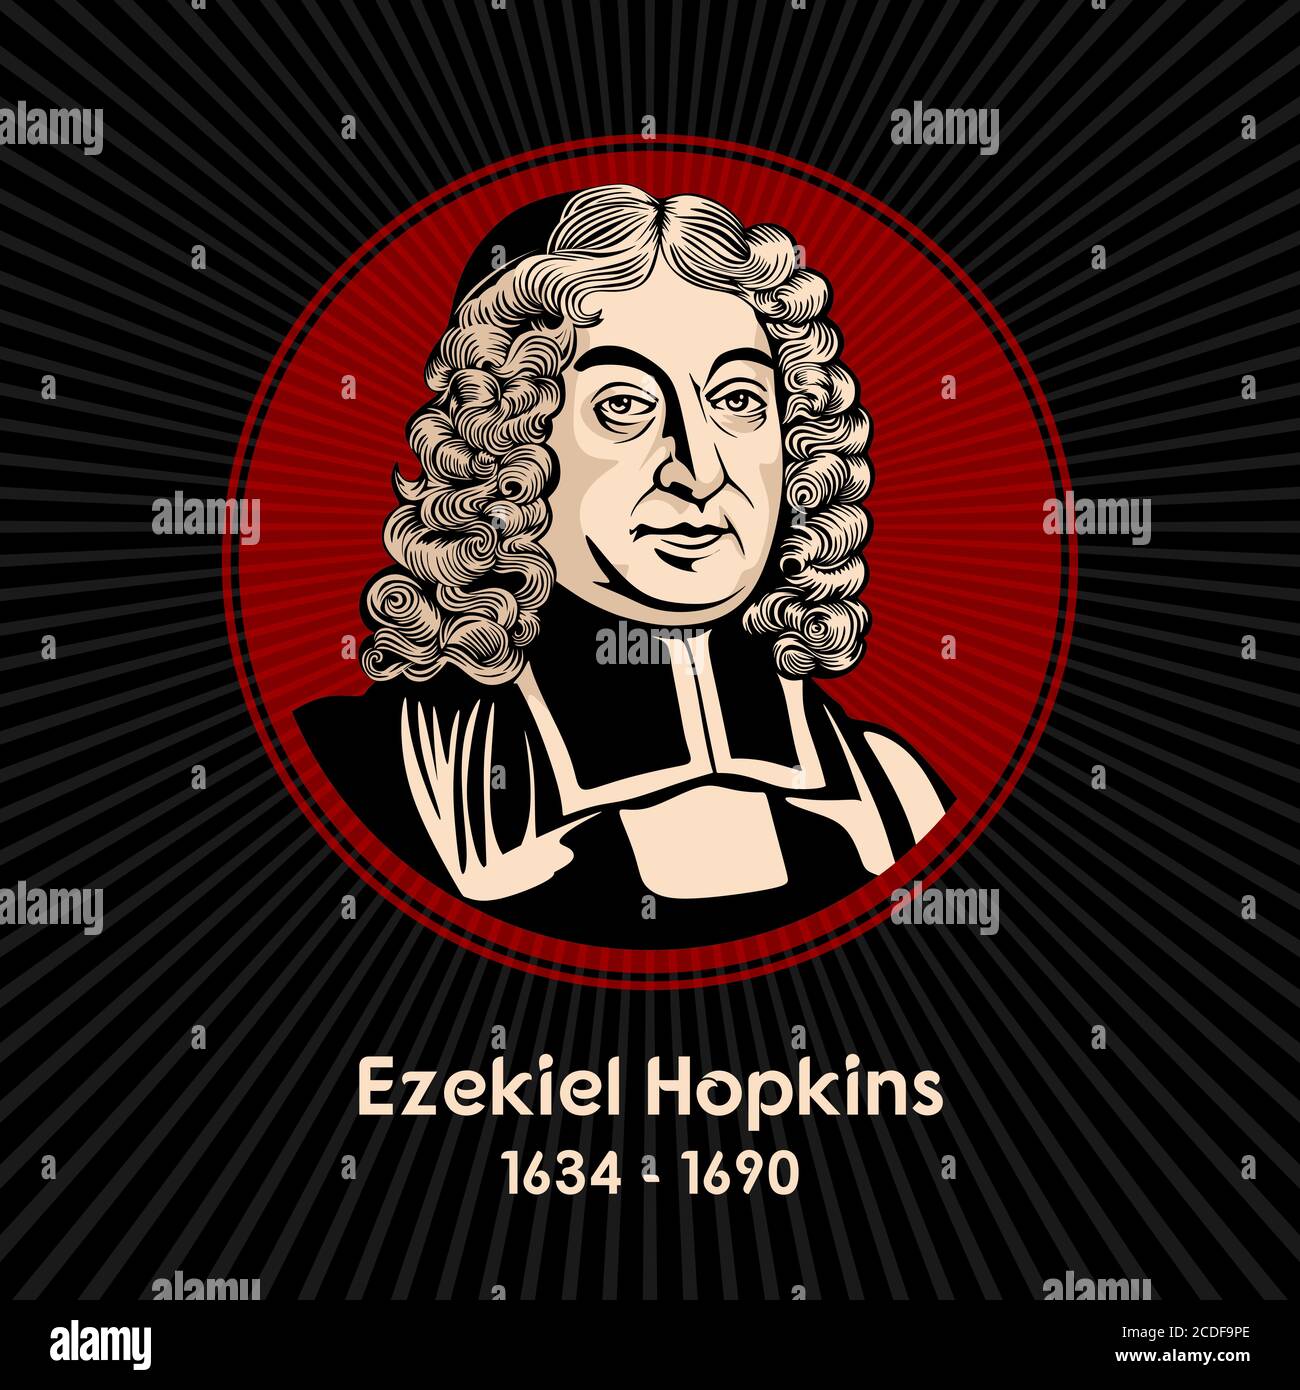 Ezekiel Hopkins (1634 - 1690) war ein anglikanischer Göttlicher in der Kirche von Irland, war Bischof von Derry von 1681 bis 1690. Stock Vektor